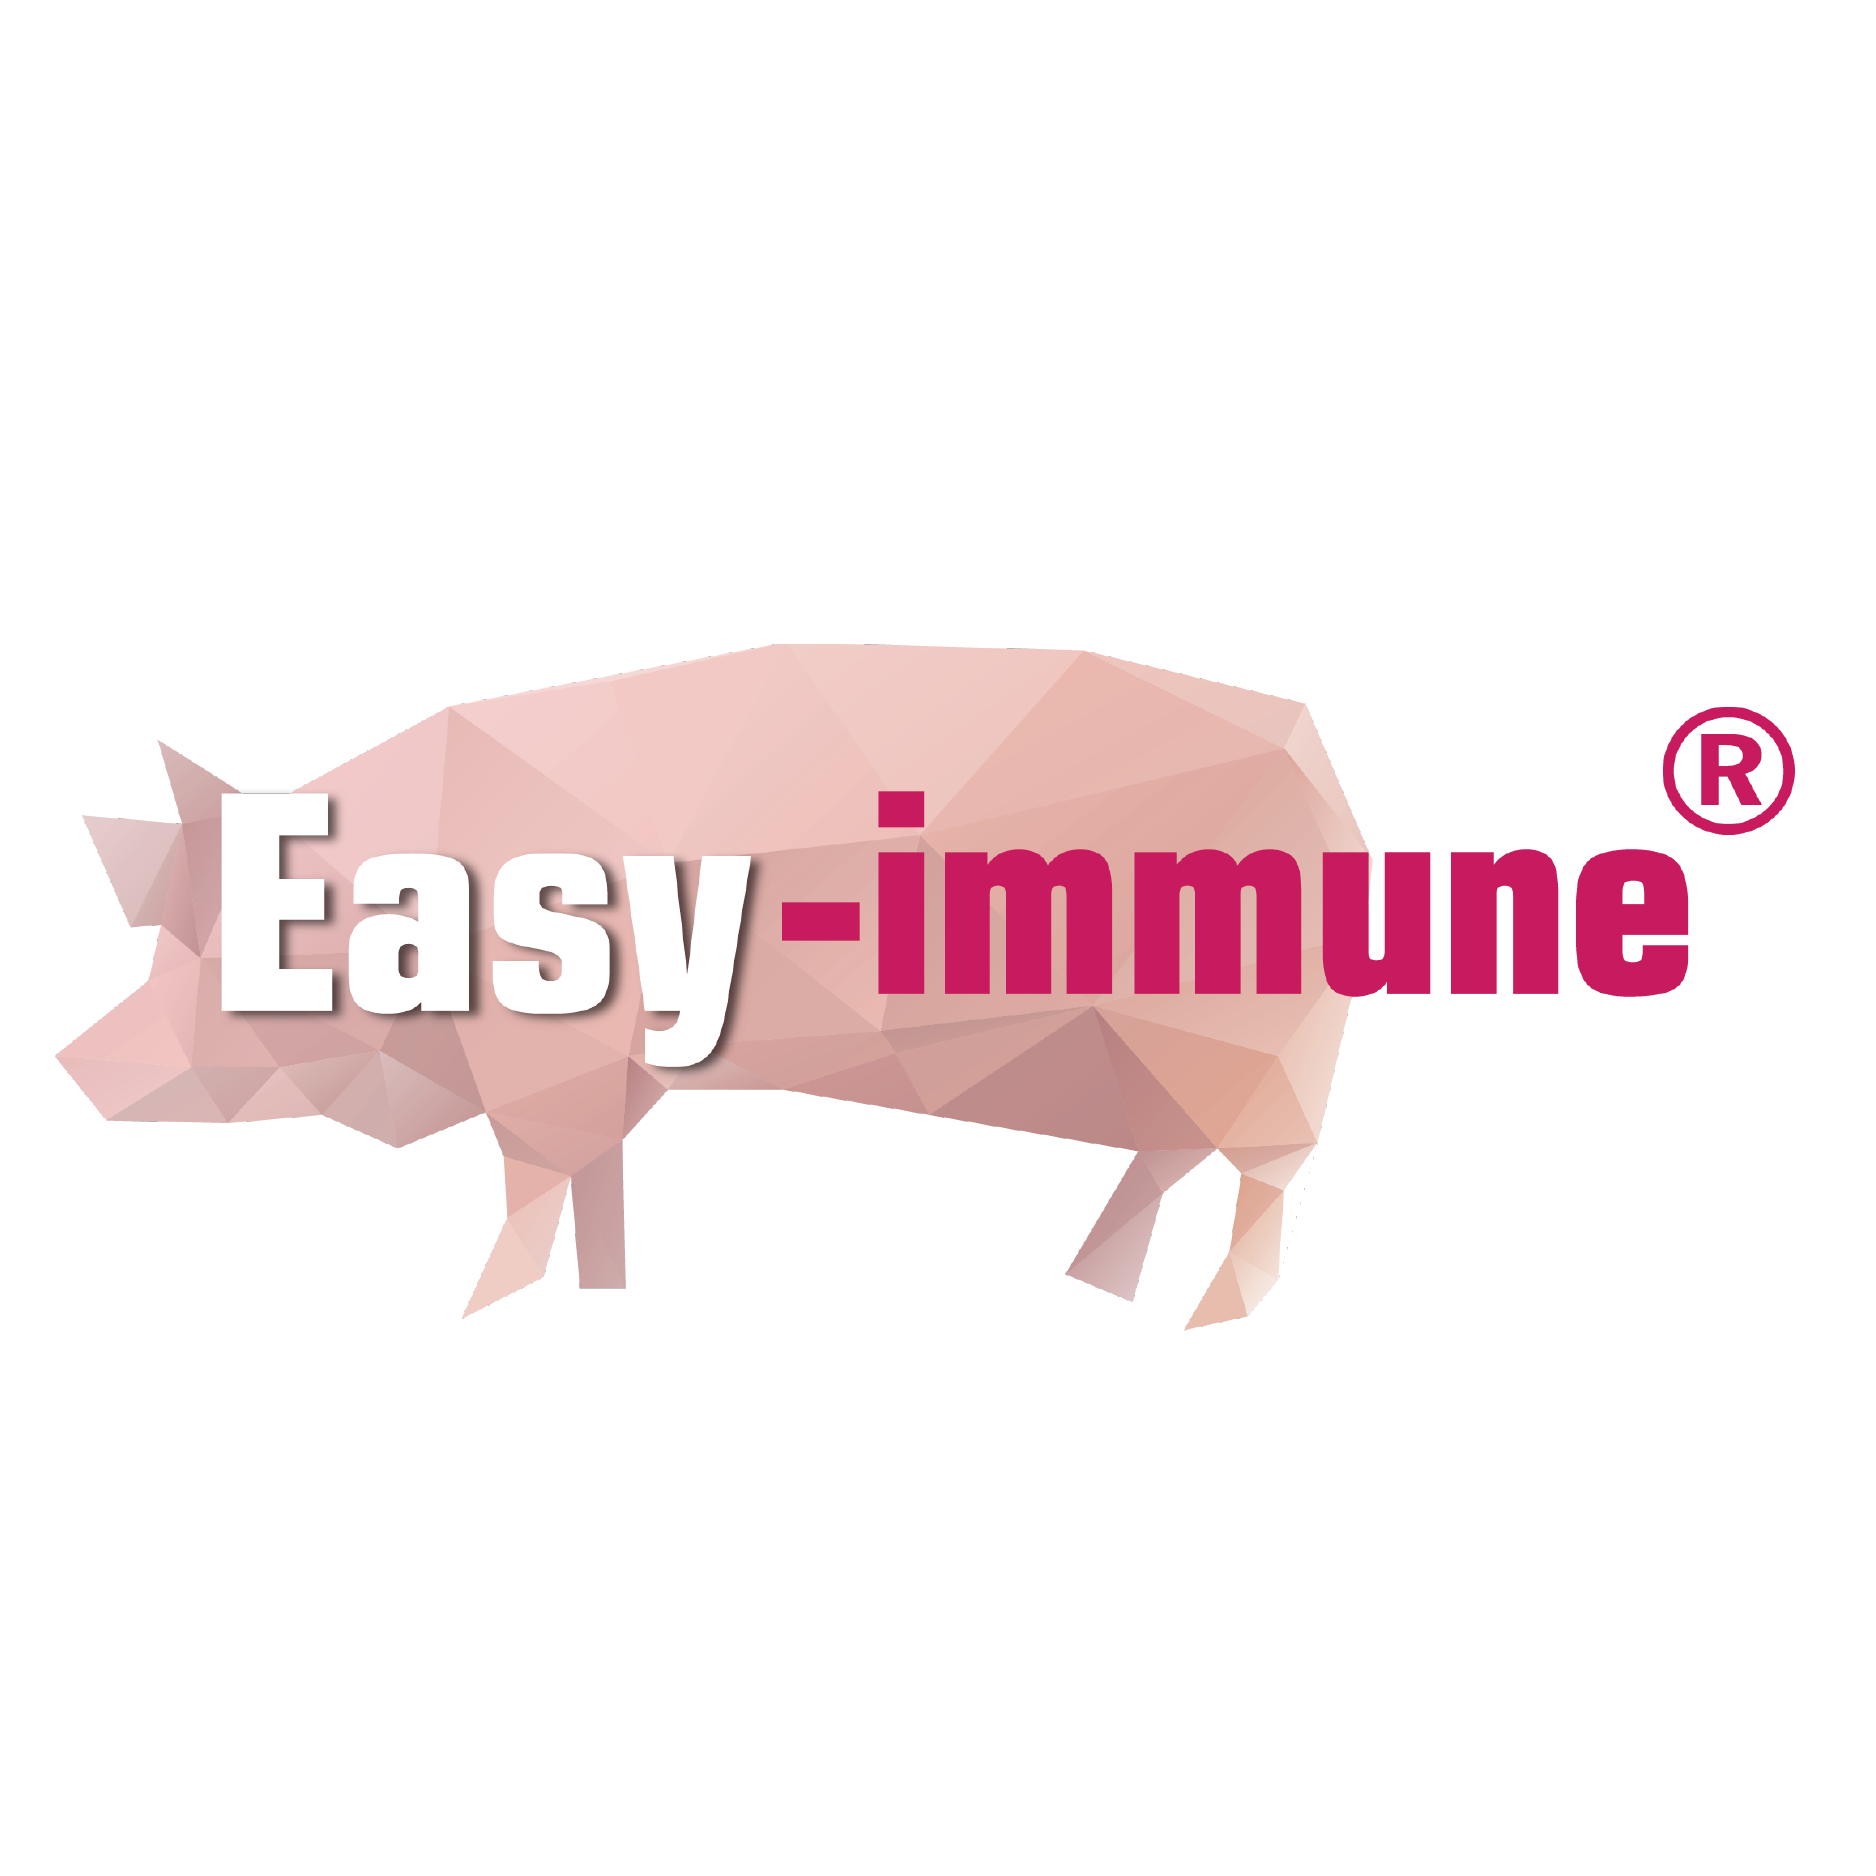 Easy Immune LOGO  (pig) 450x450_工作區域 1